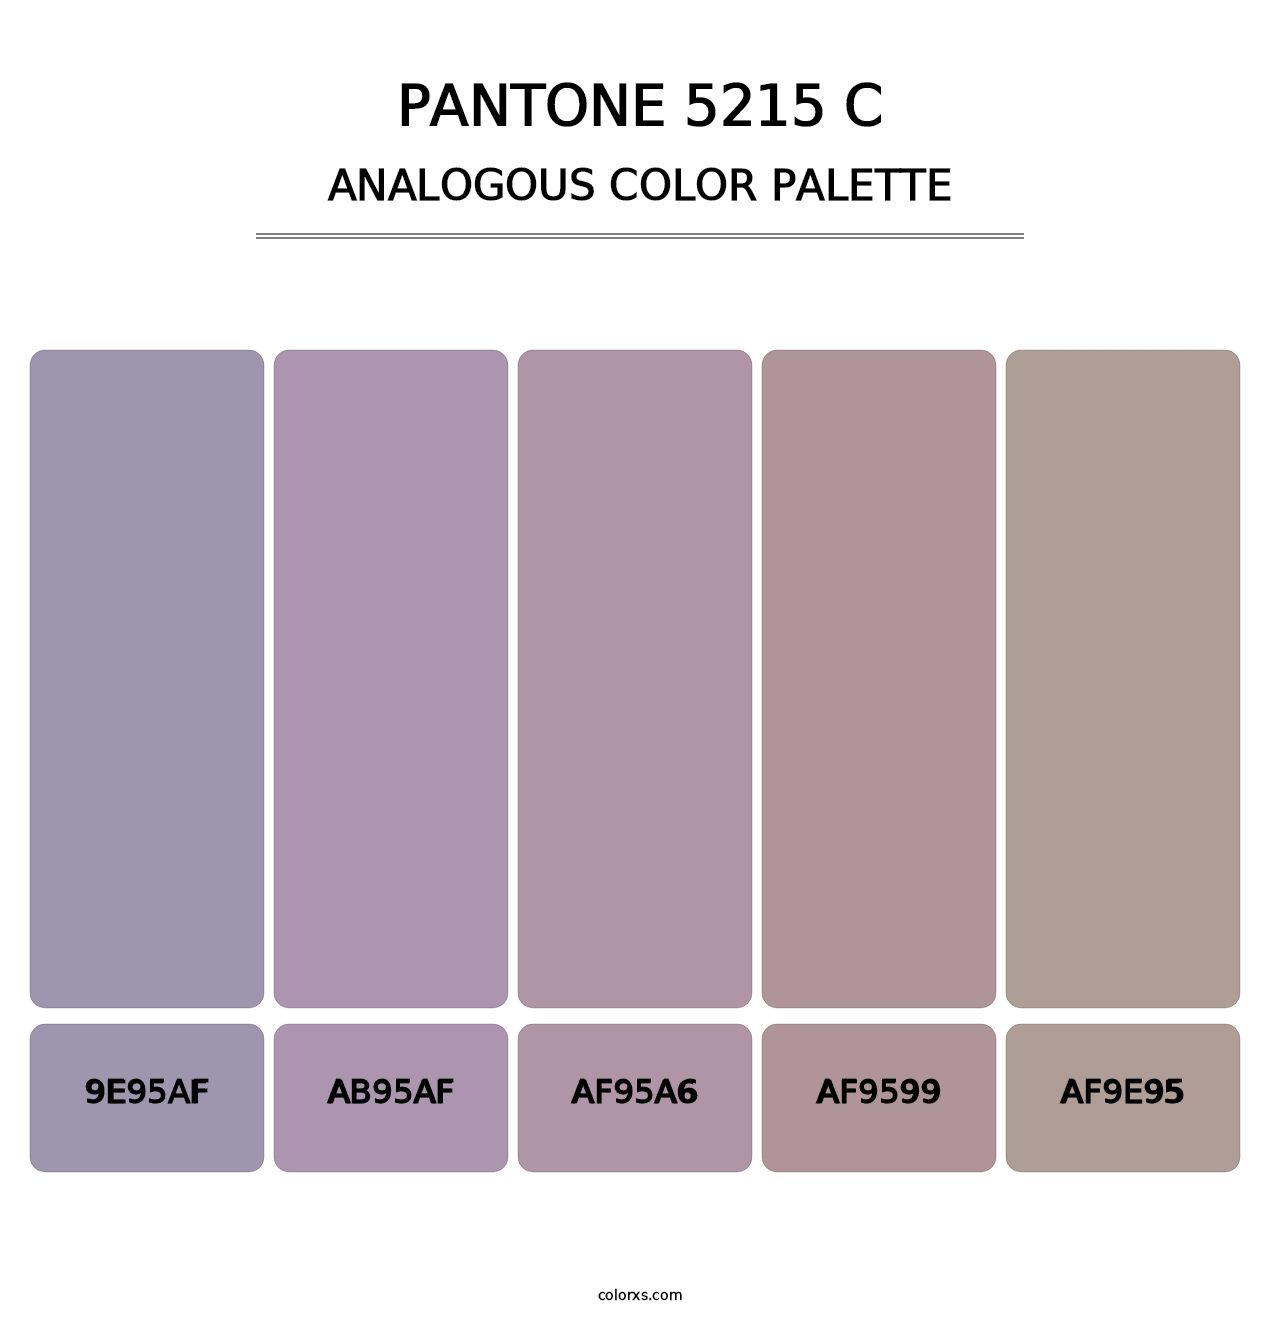 PANTONE 5215 C - Analogous Color Palette